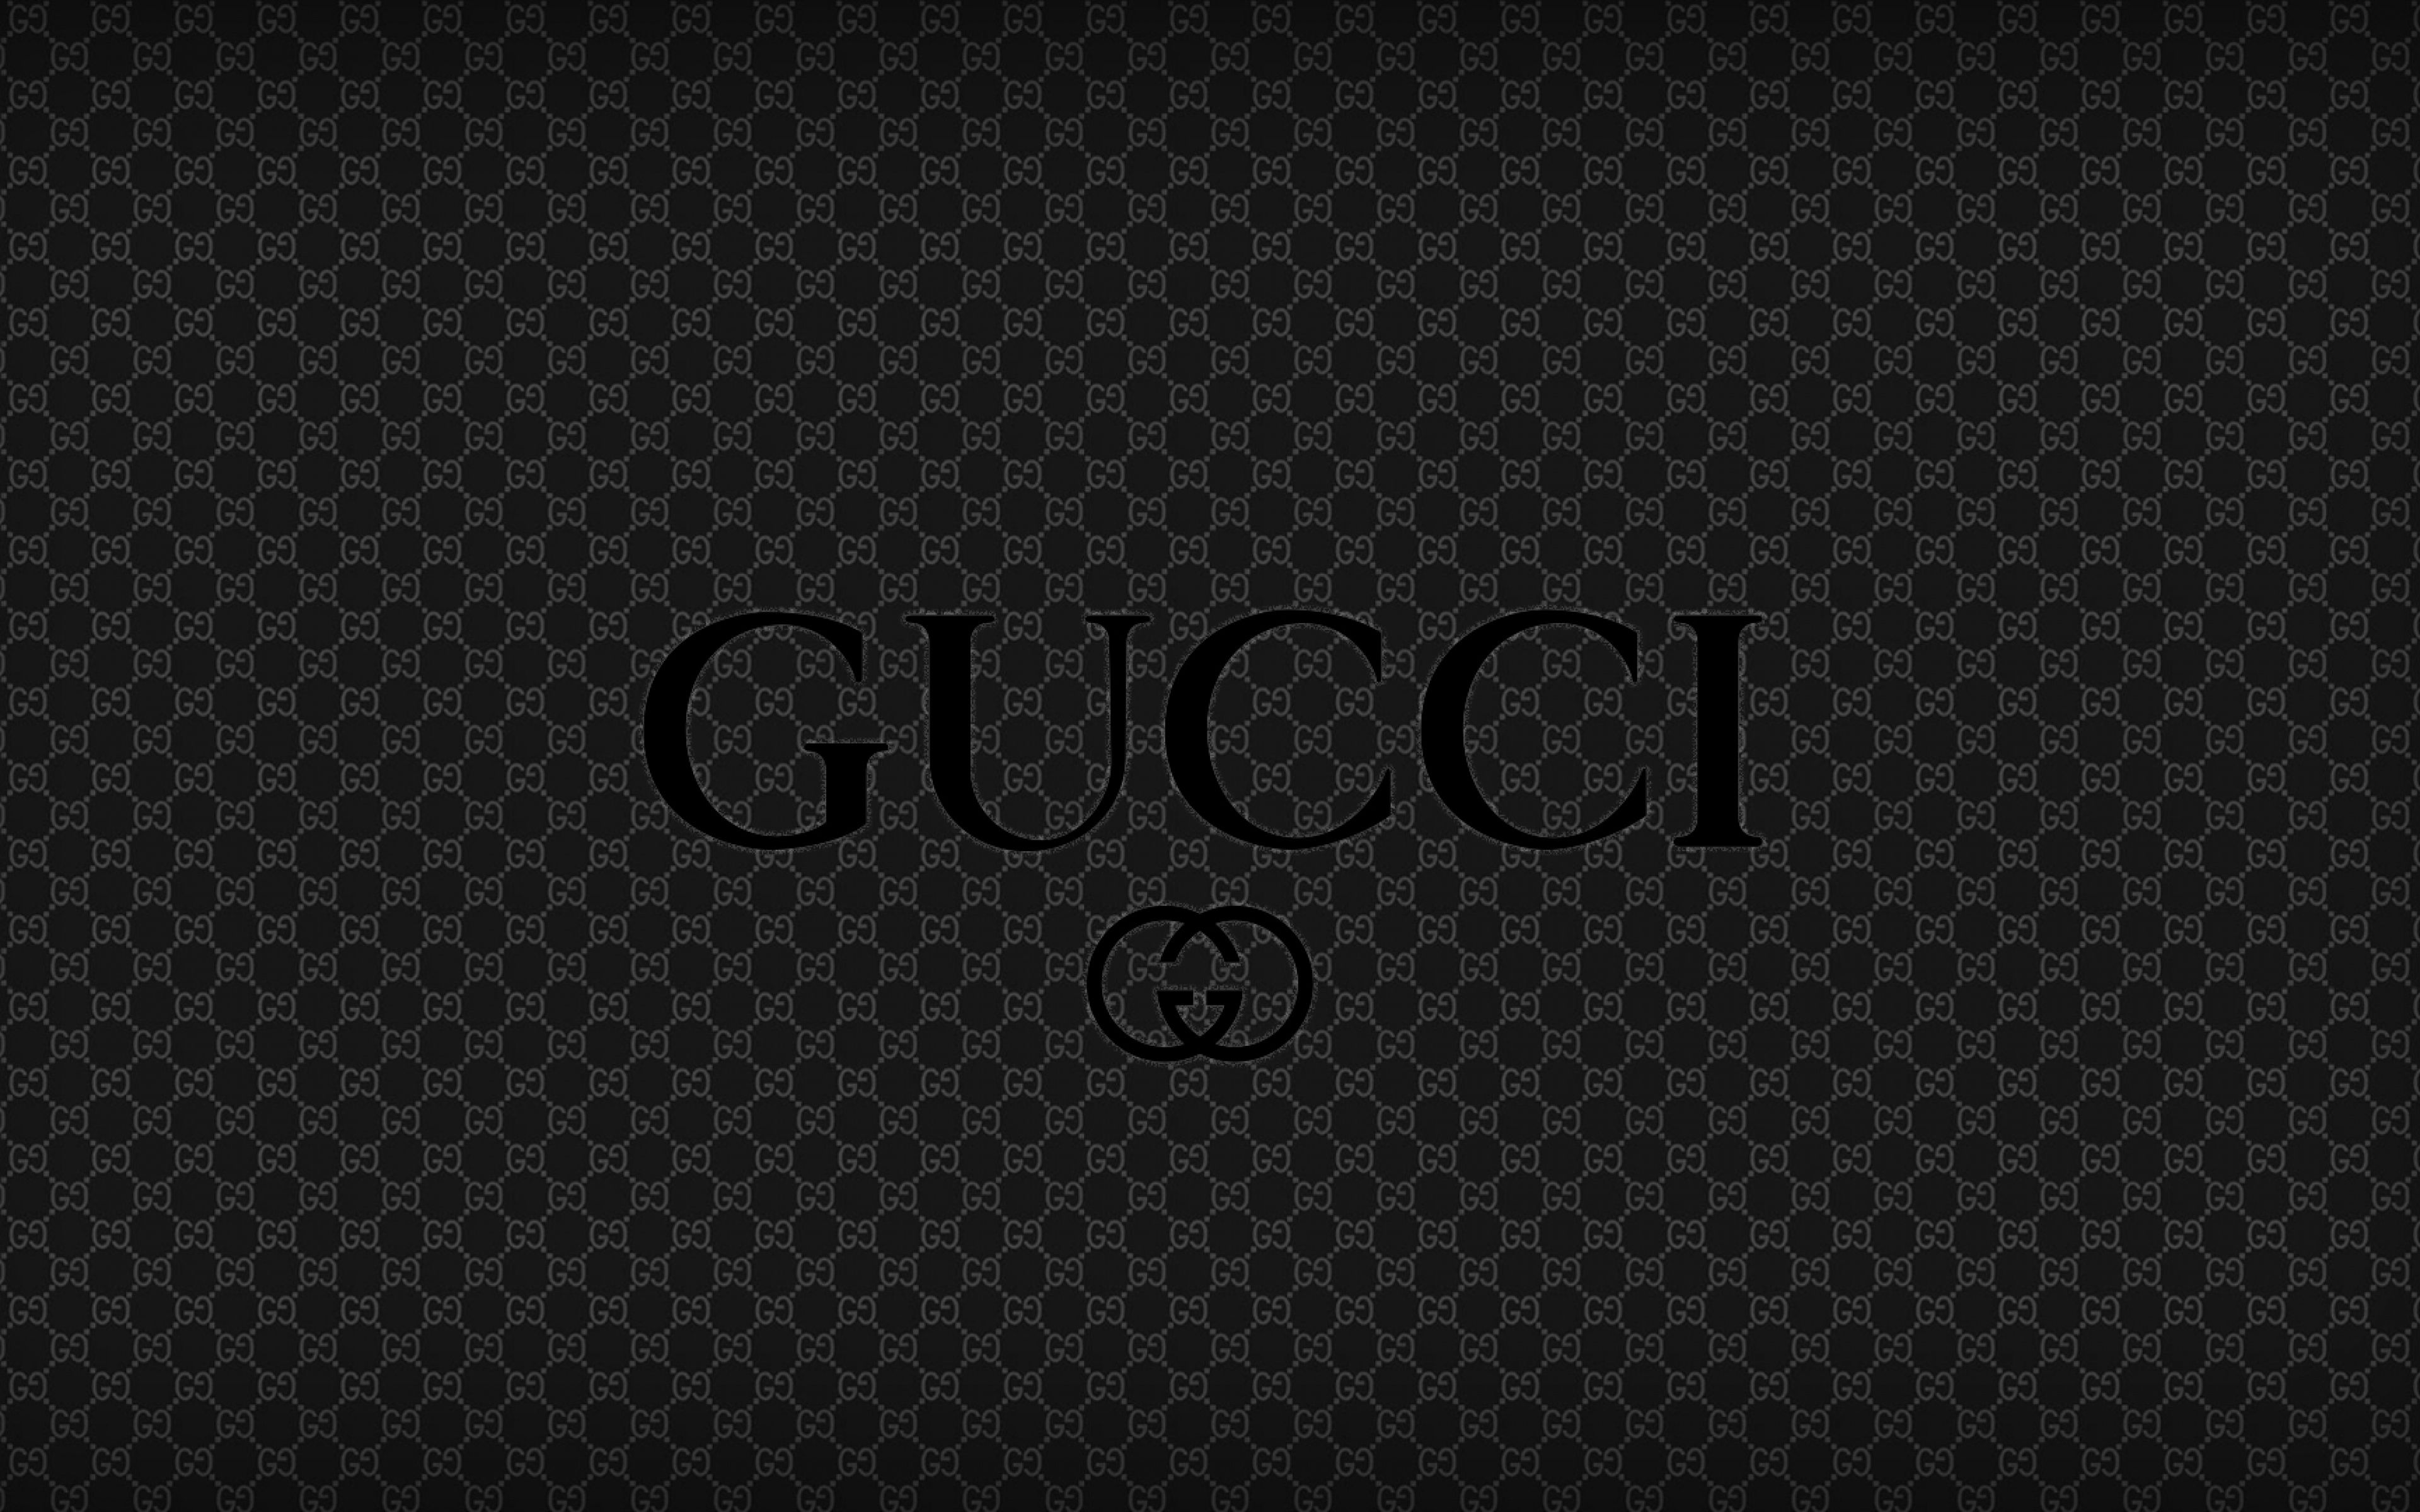 Fondos de pantalla de Gucci - FondosMil